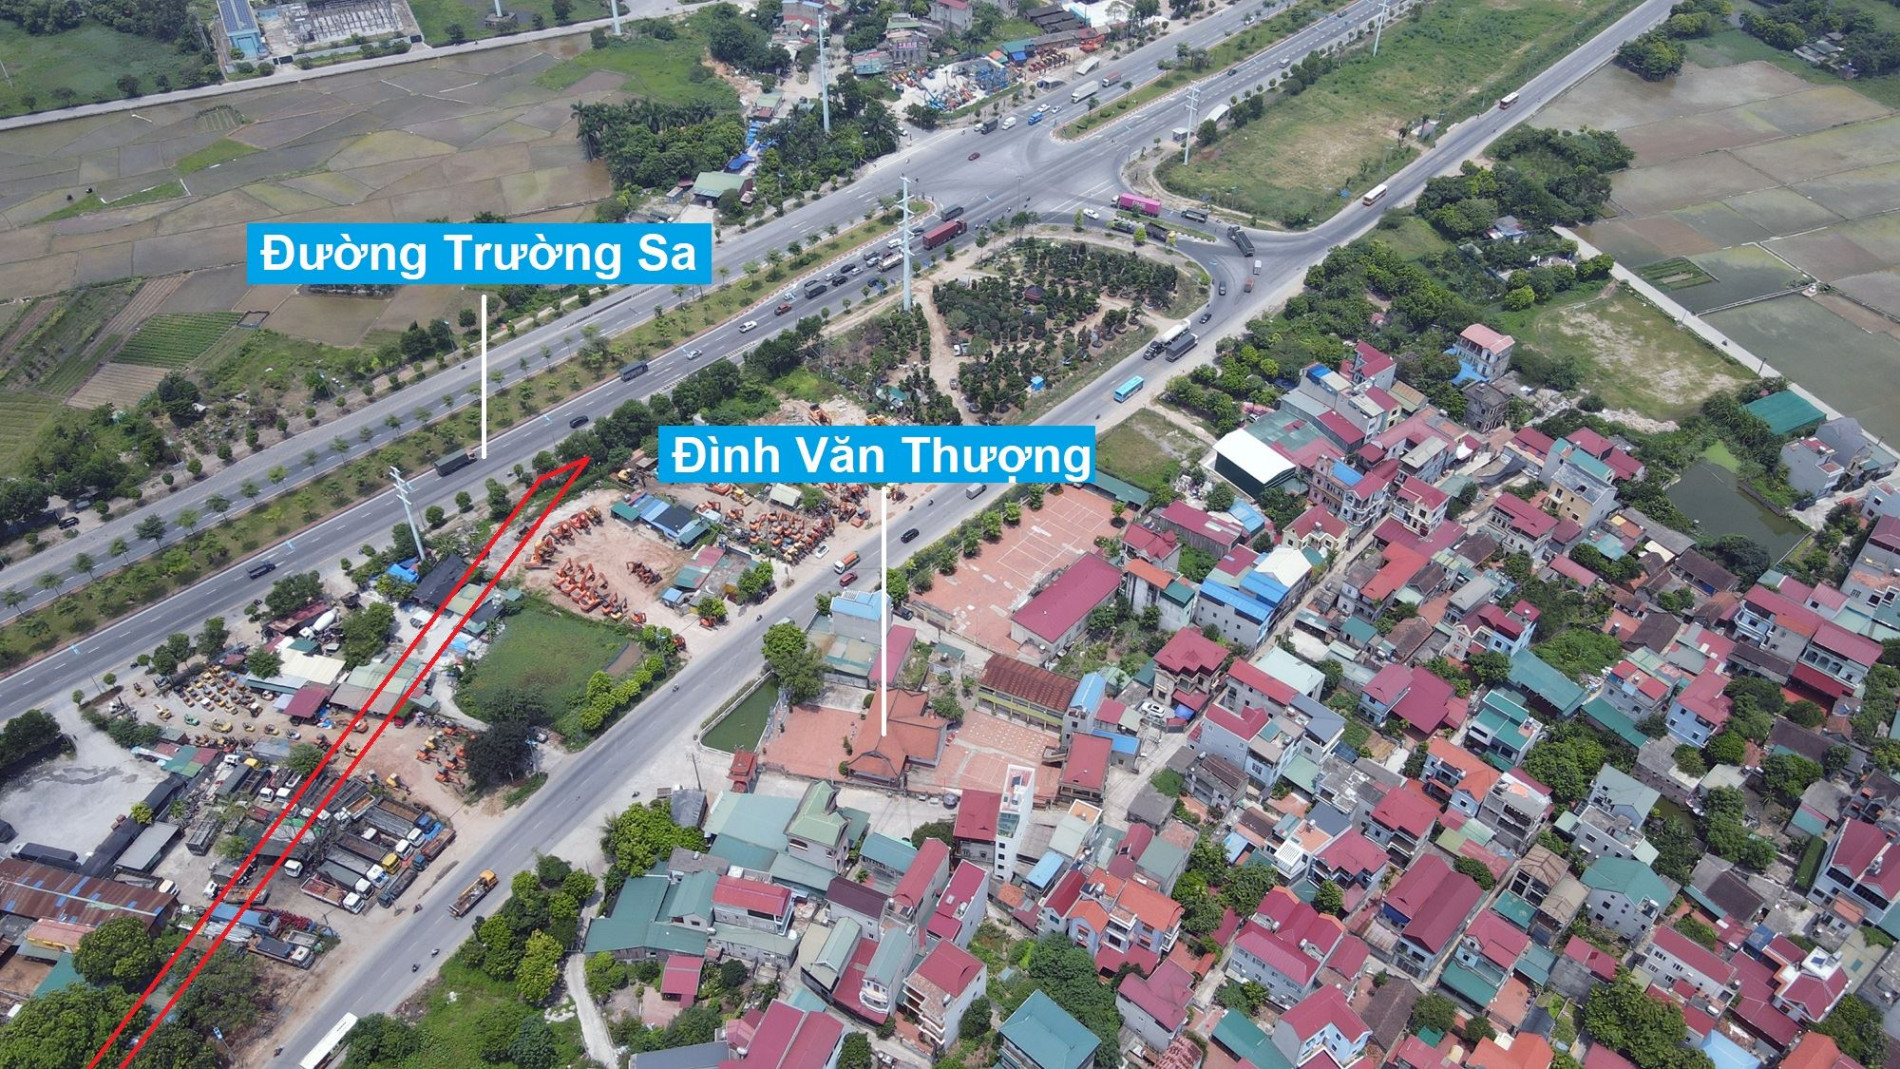 Đường sẽ mở theo quy hoạch ở xã Xuân Canh, Đông Anh, Hà Nội (phần 2)